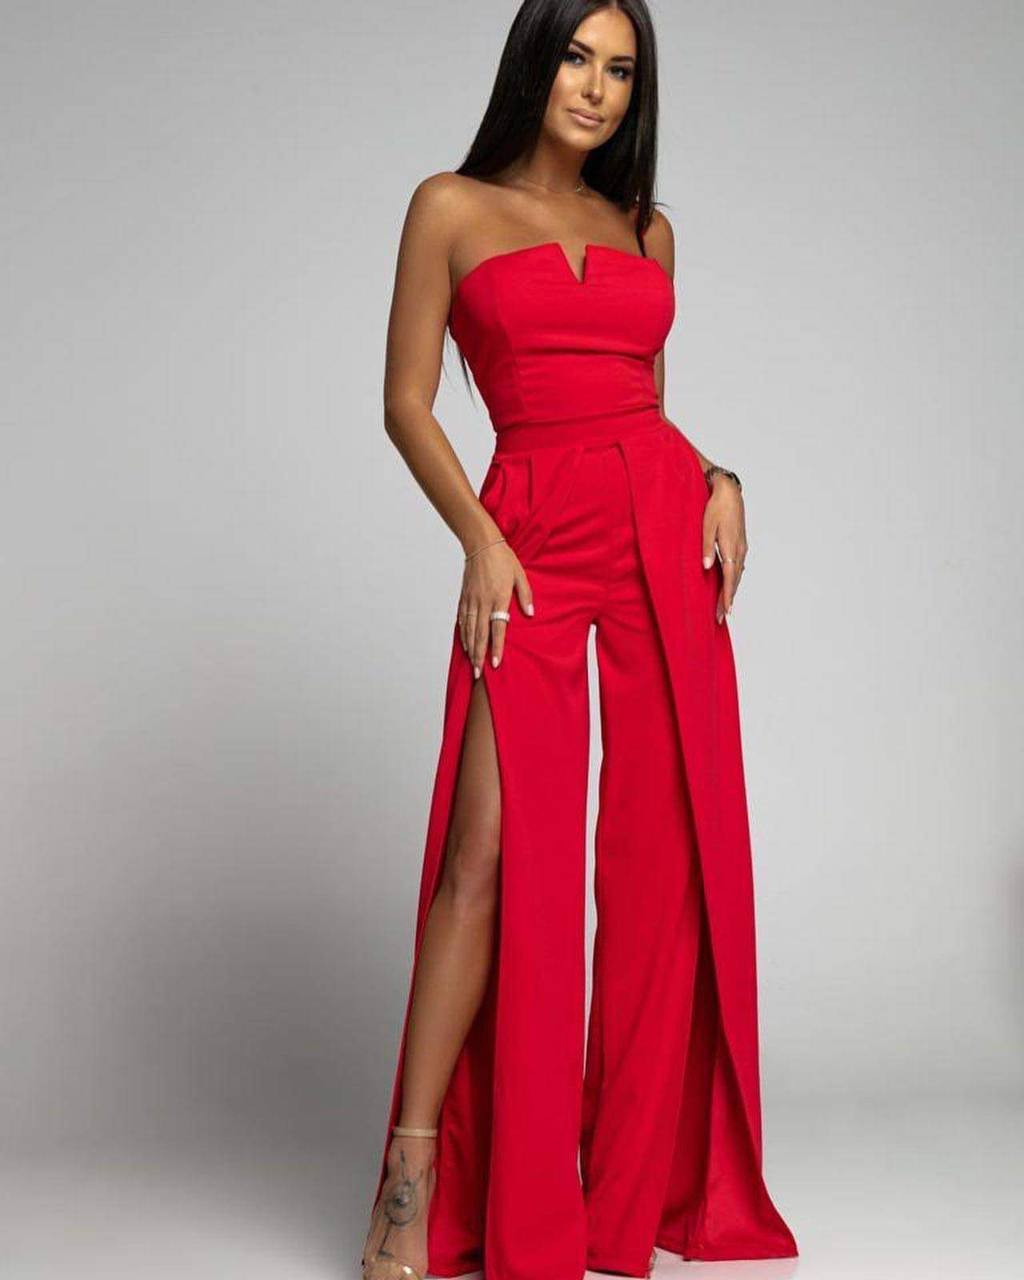 Γυναικεία κομψή ολόσωμη φόρμα 9469 κόκκινο